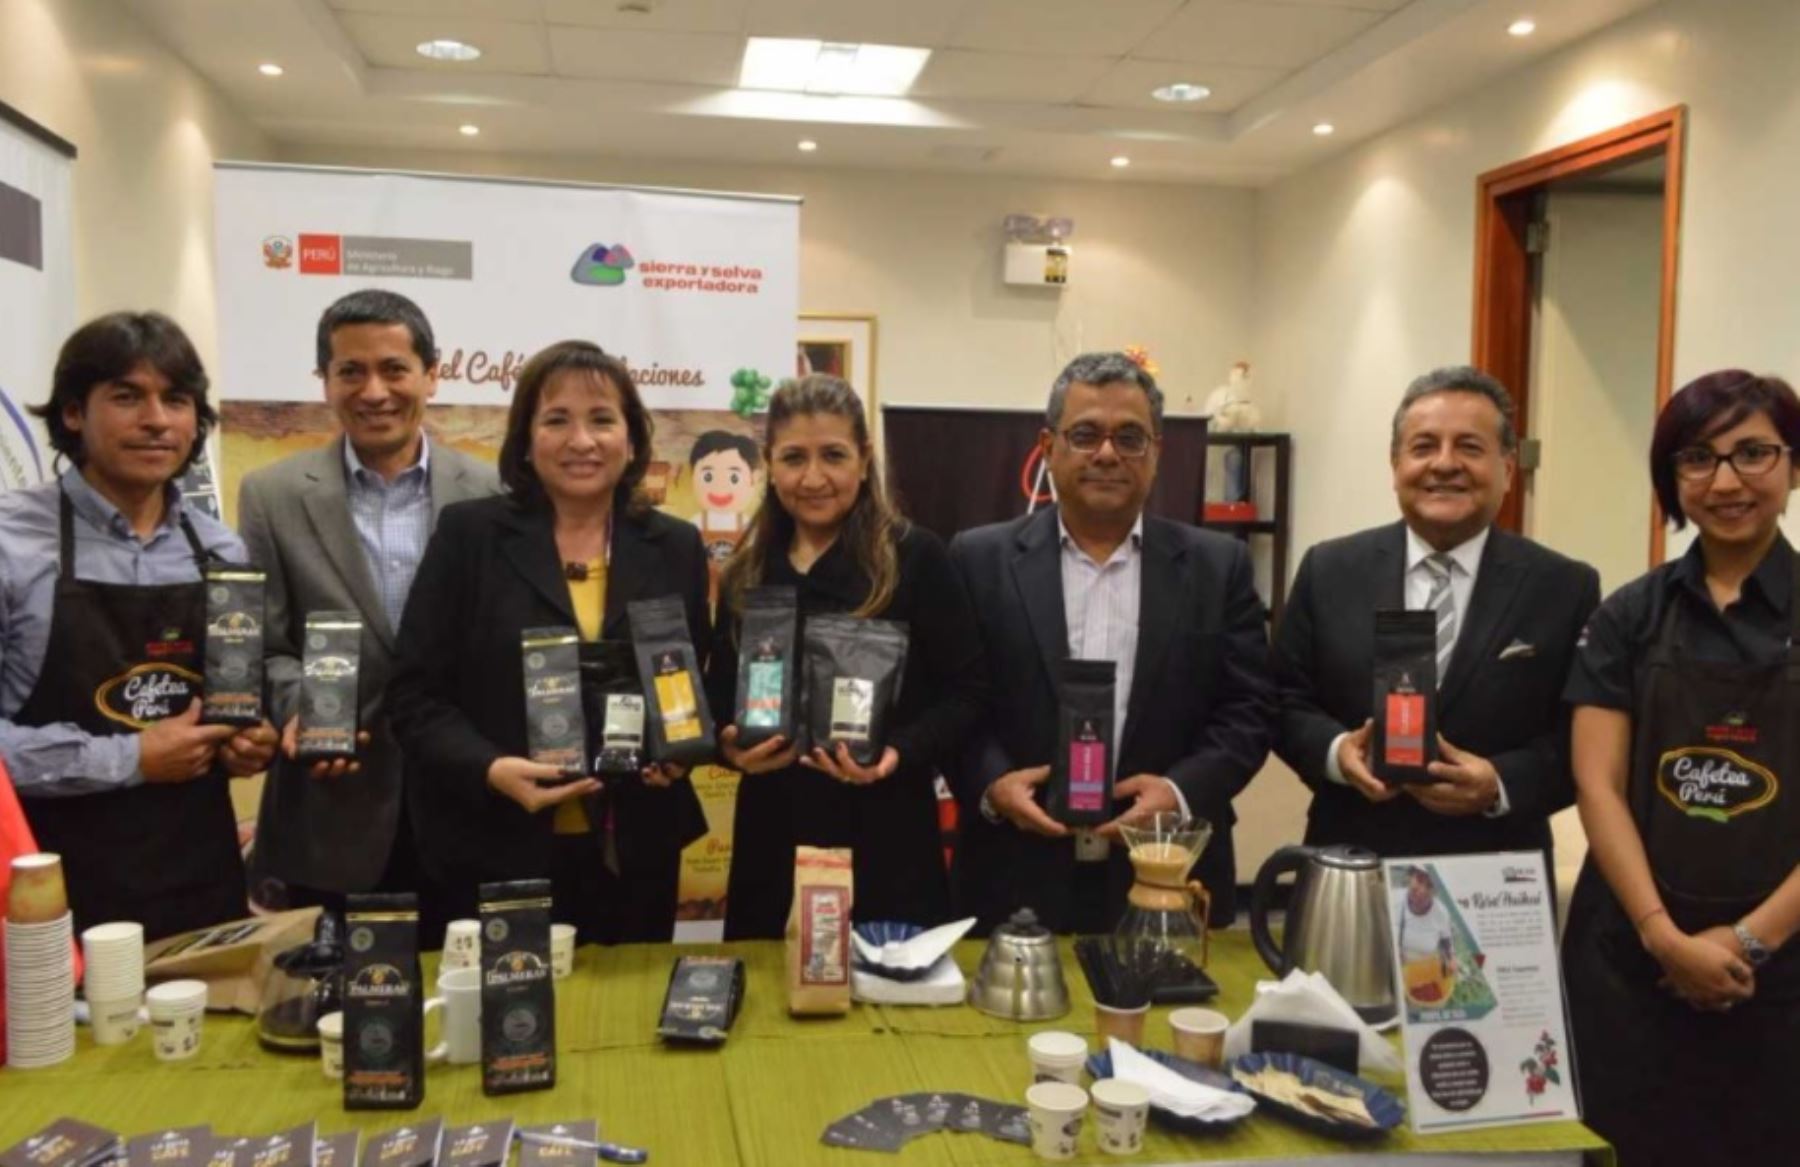 La campaña “Cafetea Perú” de Sierra y Selva Exportadora fue promovida en el Ministerio del Ambiente (Minam), donde la titular de dicha cartera, Elsa Galarza, destacó esta iniciativa que busca incrementar a nivel nacional el consumo de café tostado peruano.